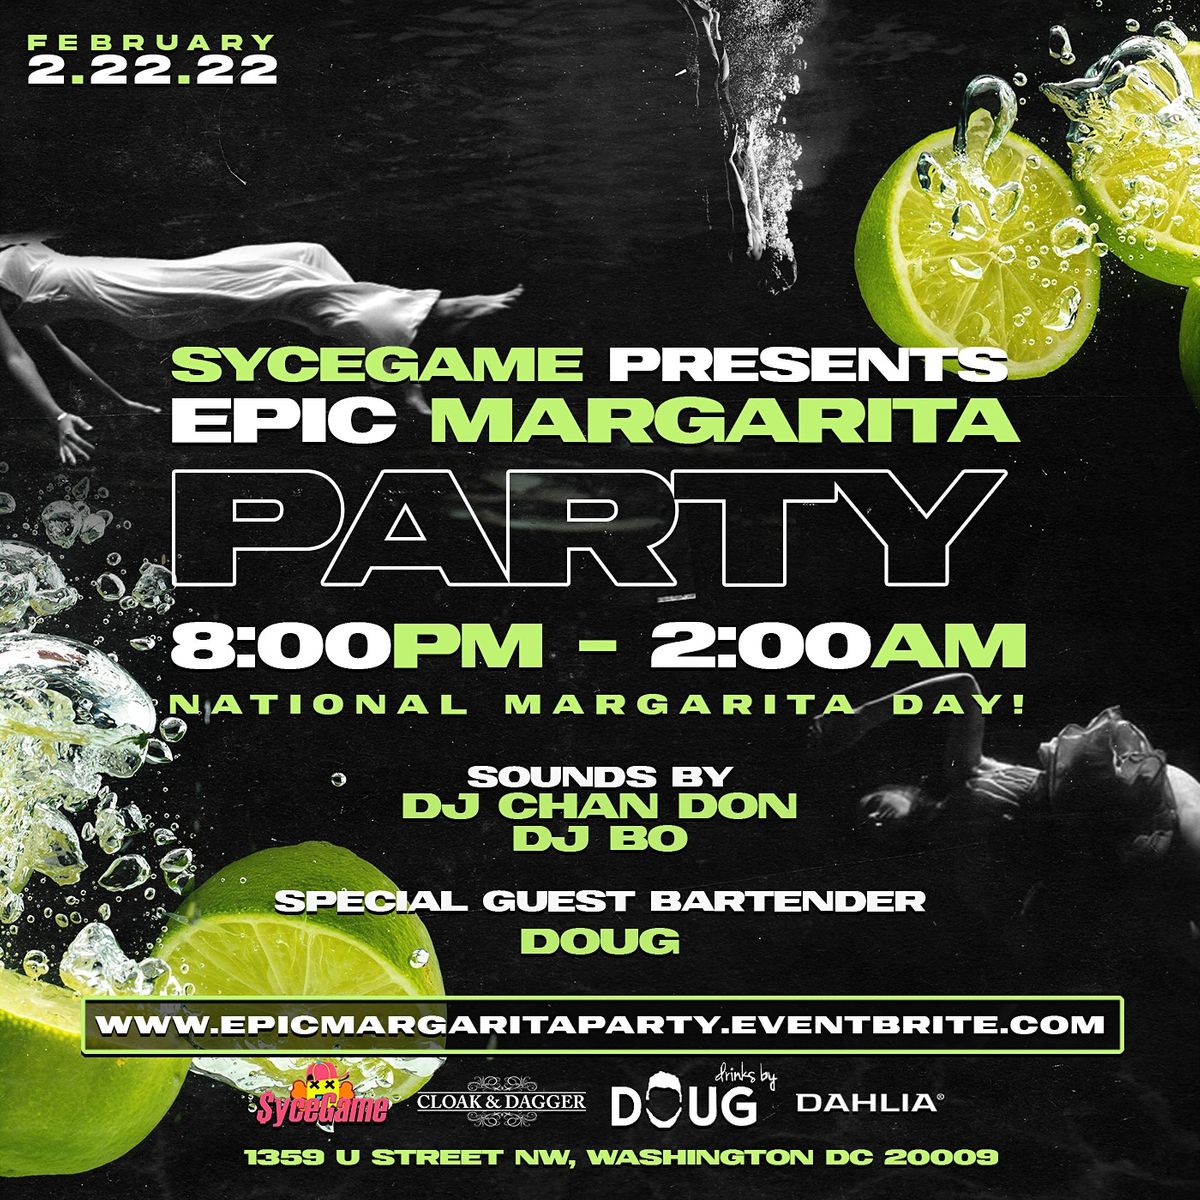 Epic Margarita Party:  National Margarita Day!